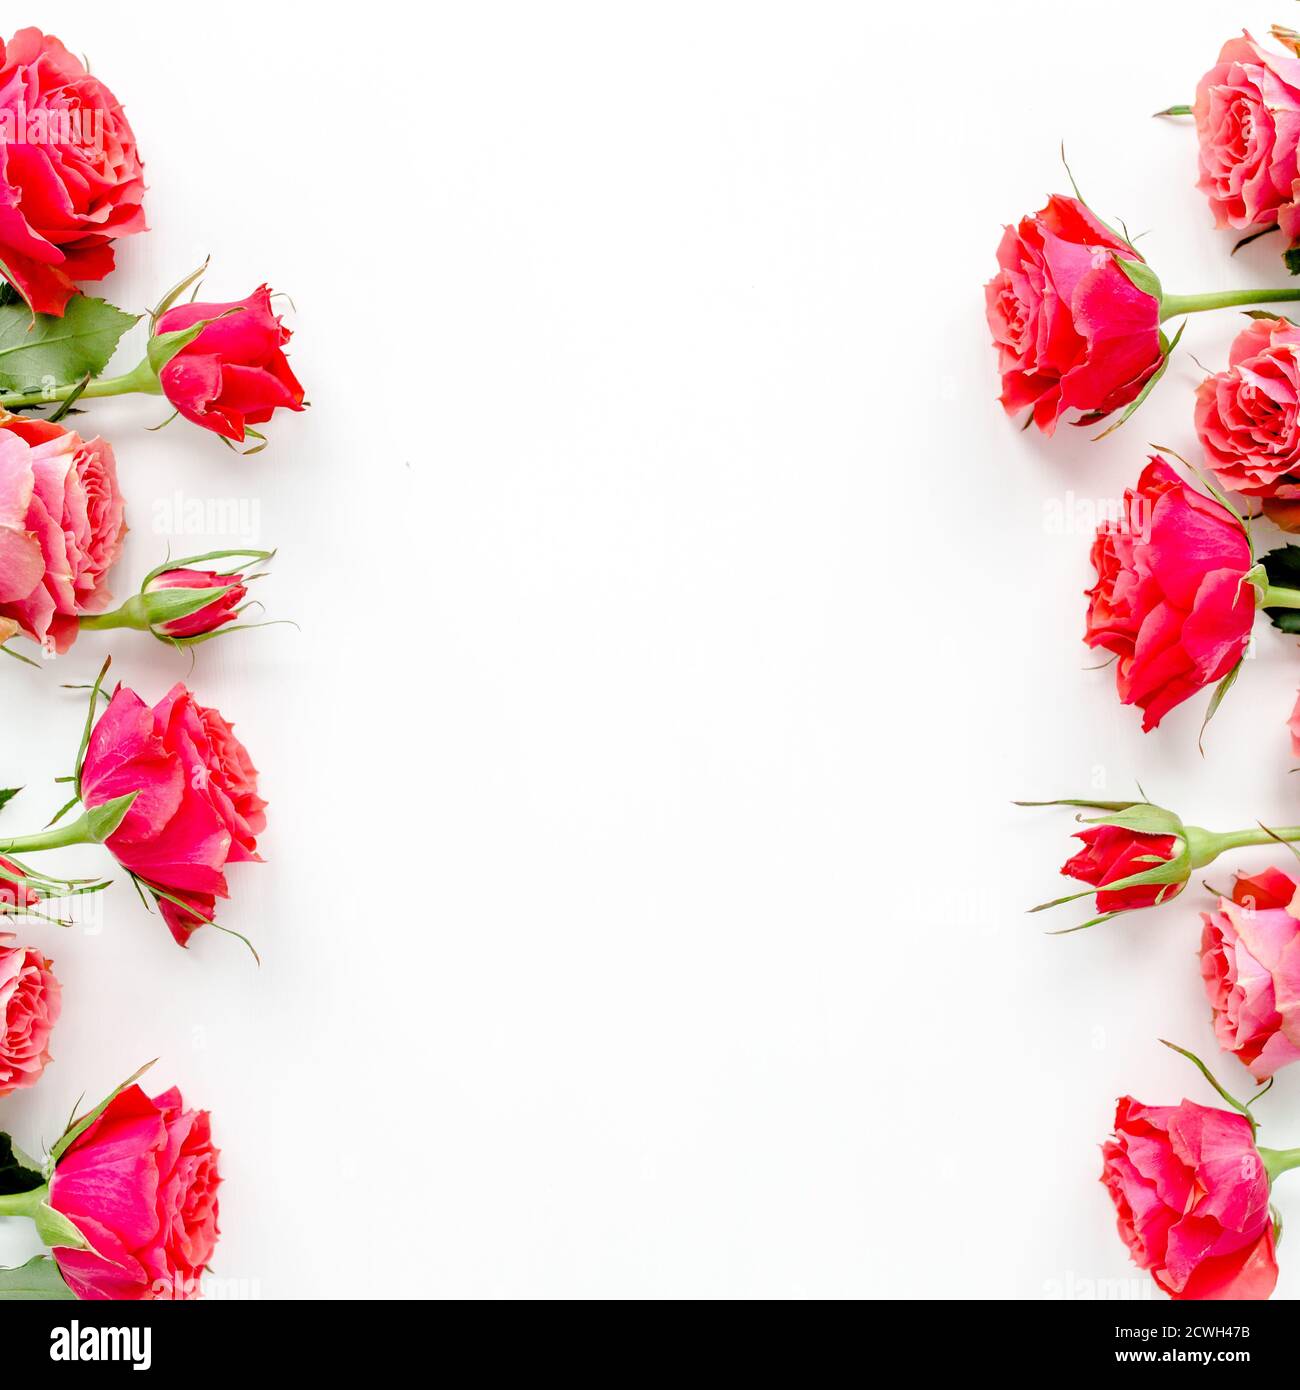 Blumenrahmen aus roten Rosen auf weißem Hintergrund mit Platz für Text. Valentinstag Hintergrund. Blumenmuster. Flach liegend, Draufsicht. Stockfoto